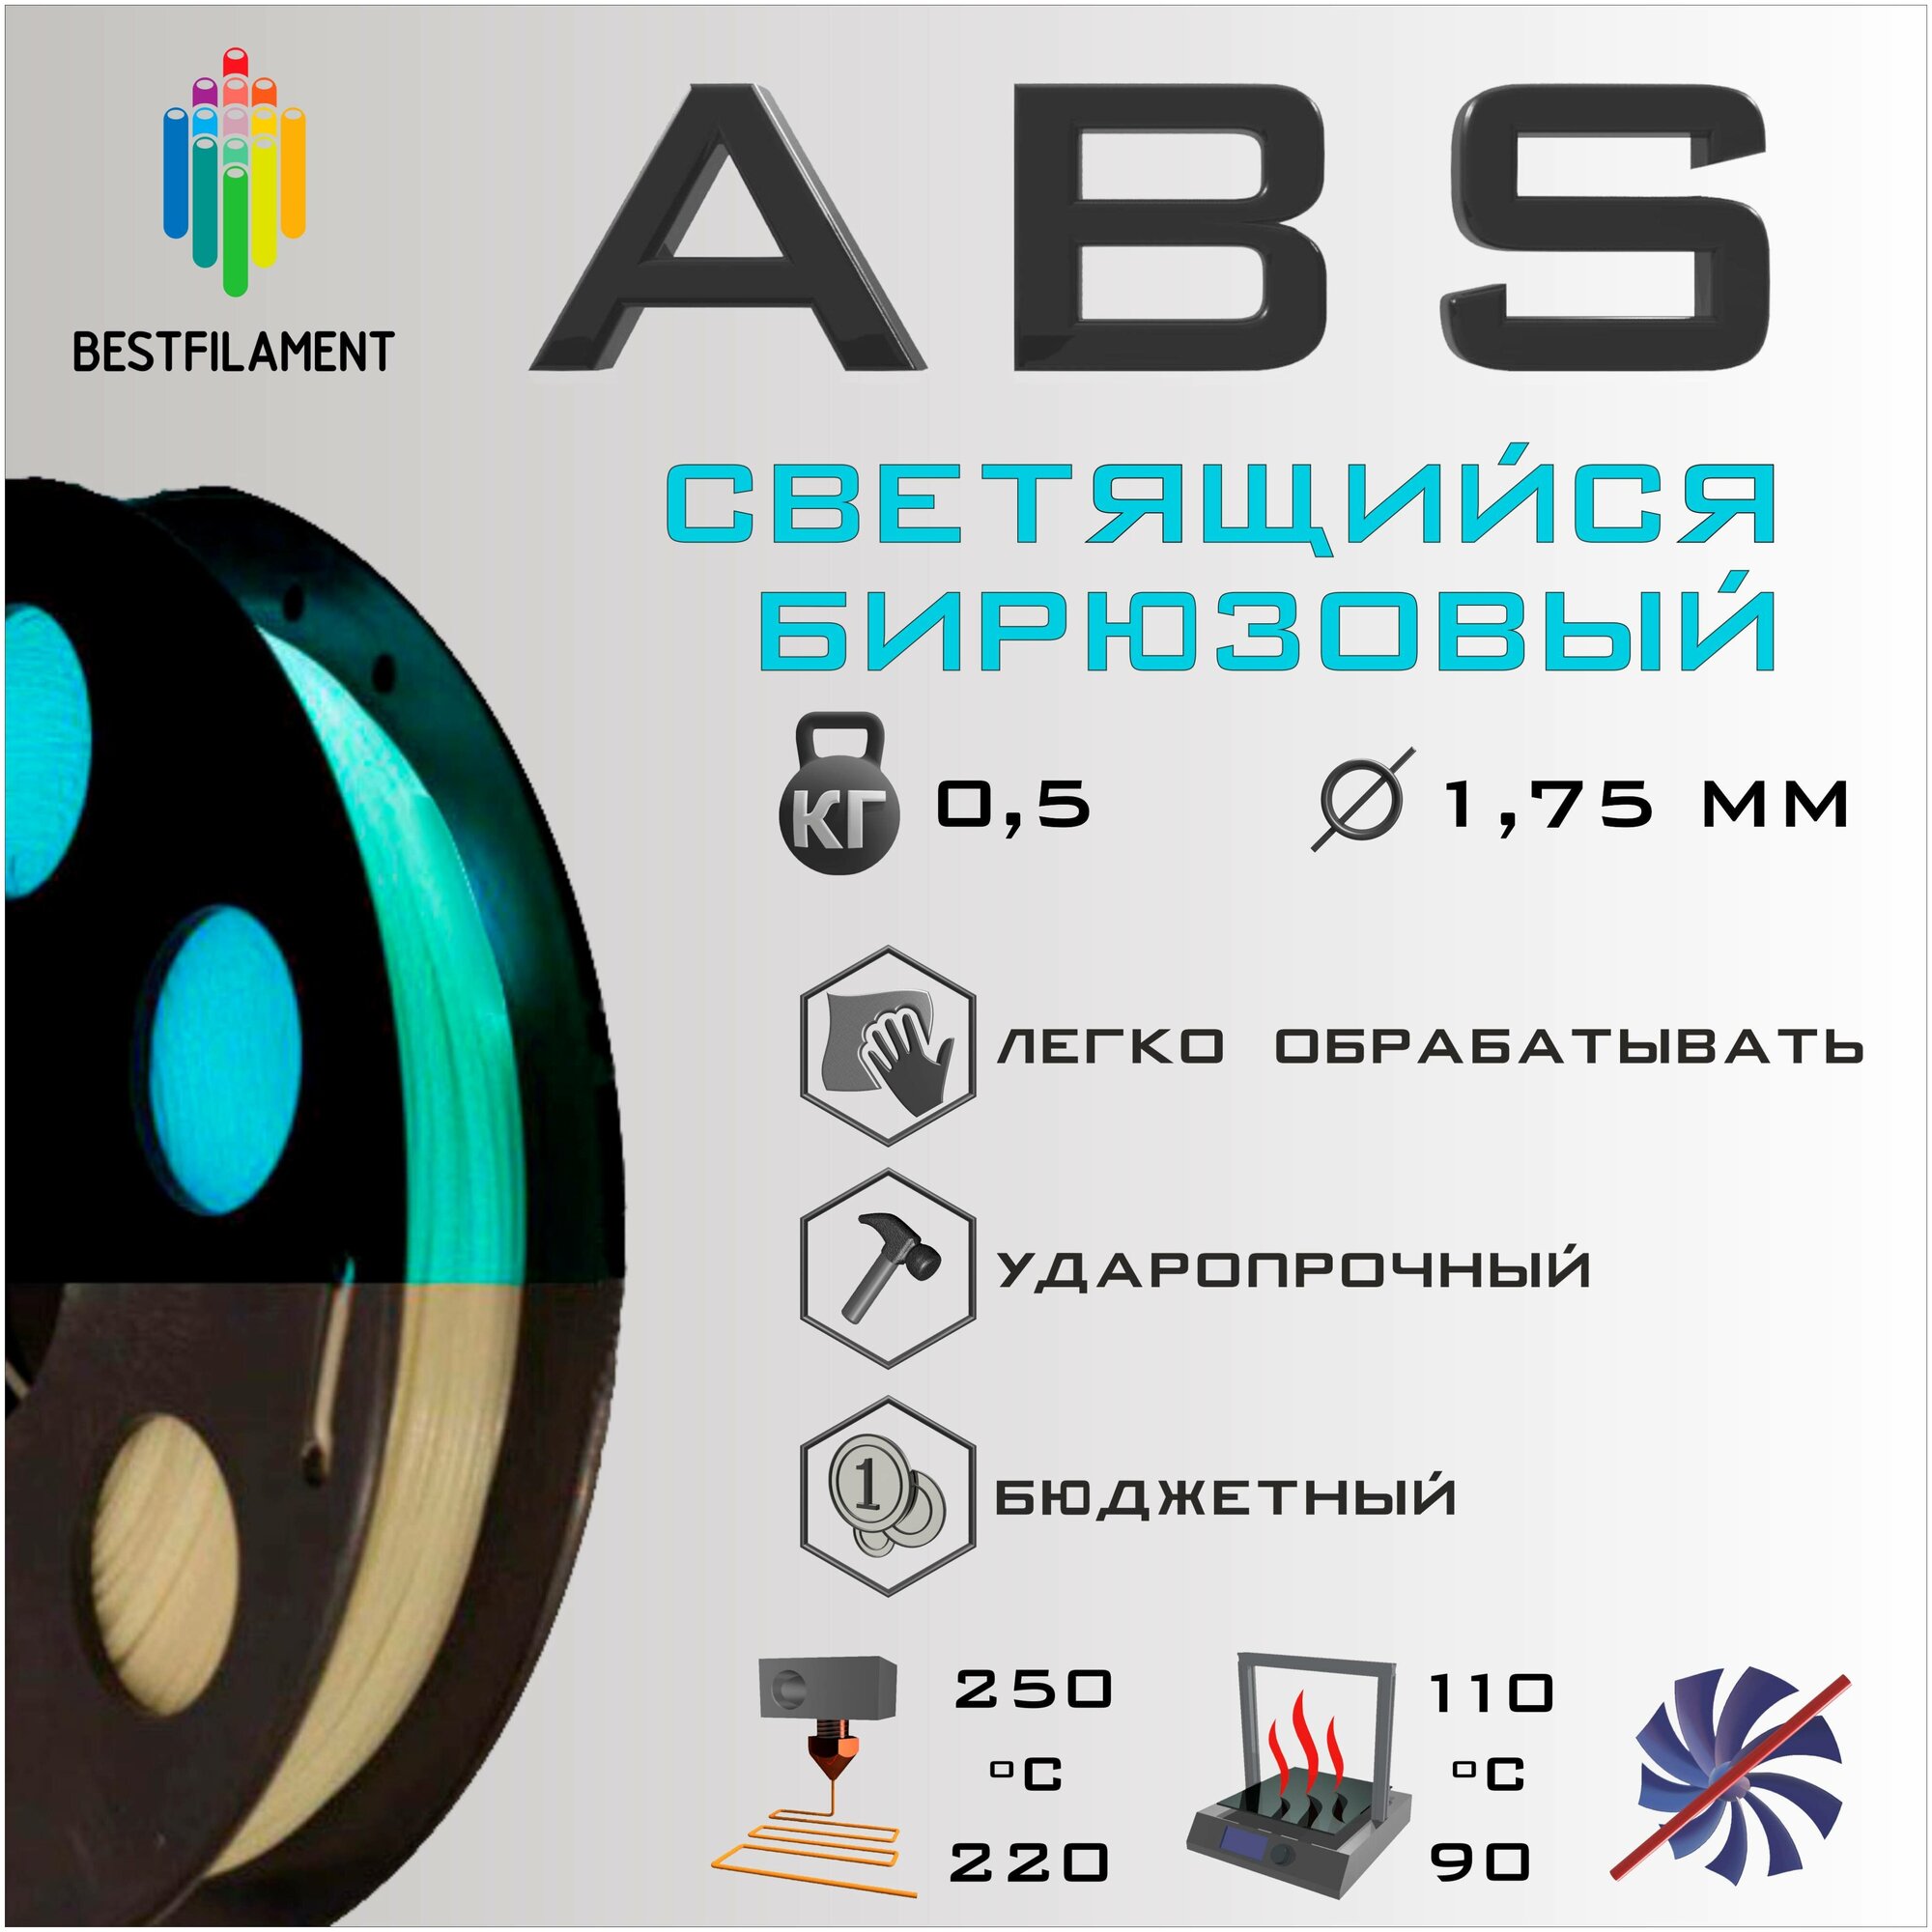 ABS    Bestfilament  3D- 0,5  (1,75 )